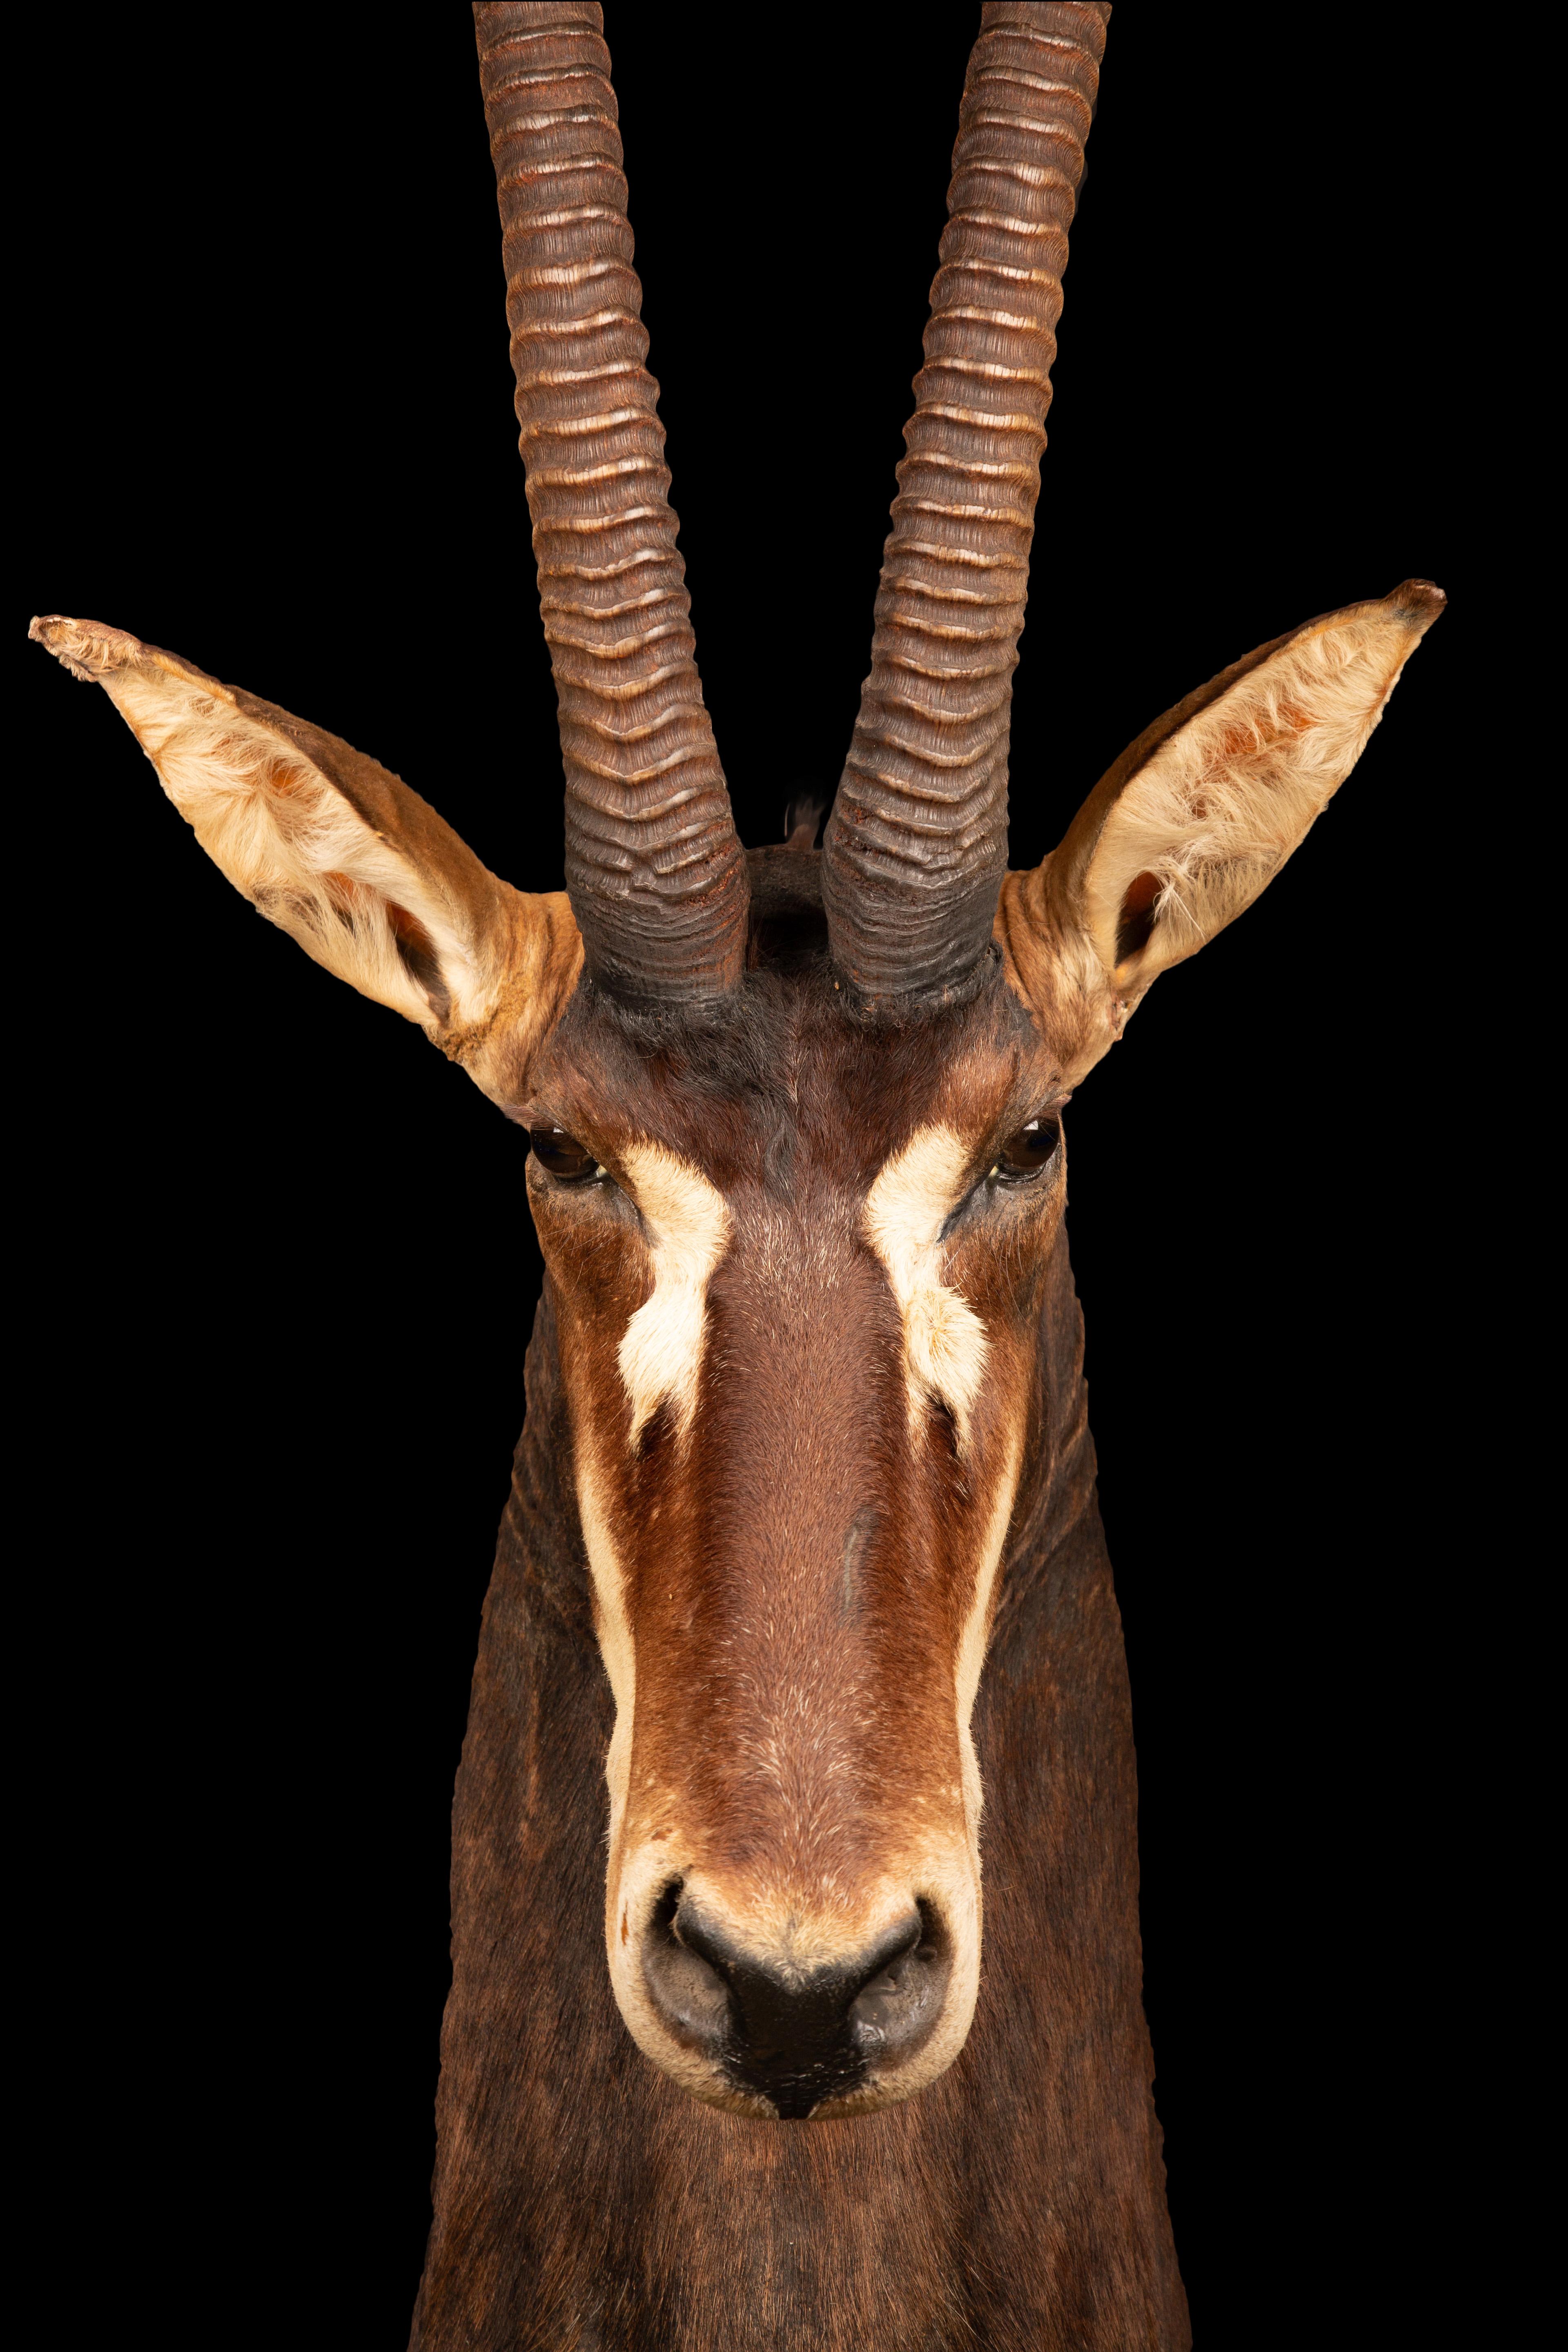 Bei diesem exquisiten Exemplar handelt es sich um eine taxidermische Rappenantilope, die fachmännisch hergestellt und wunderschön erhalten wurde. Die Rappenantilope ist eine atemberaubende Art, die in den bewaldeten Savannen des östlichen und